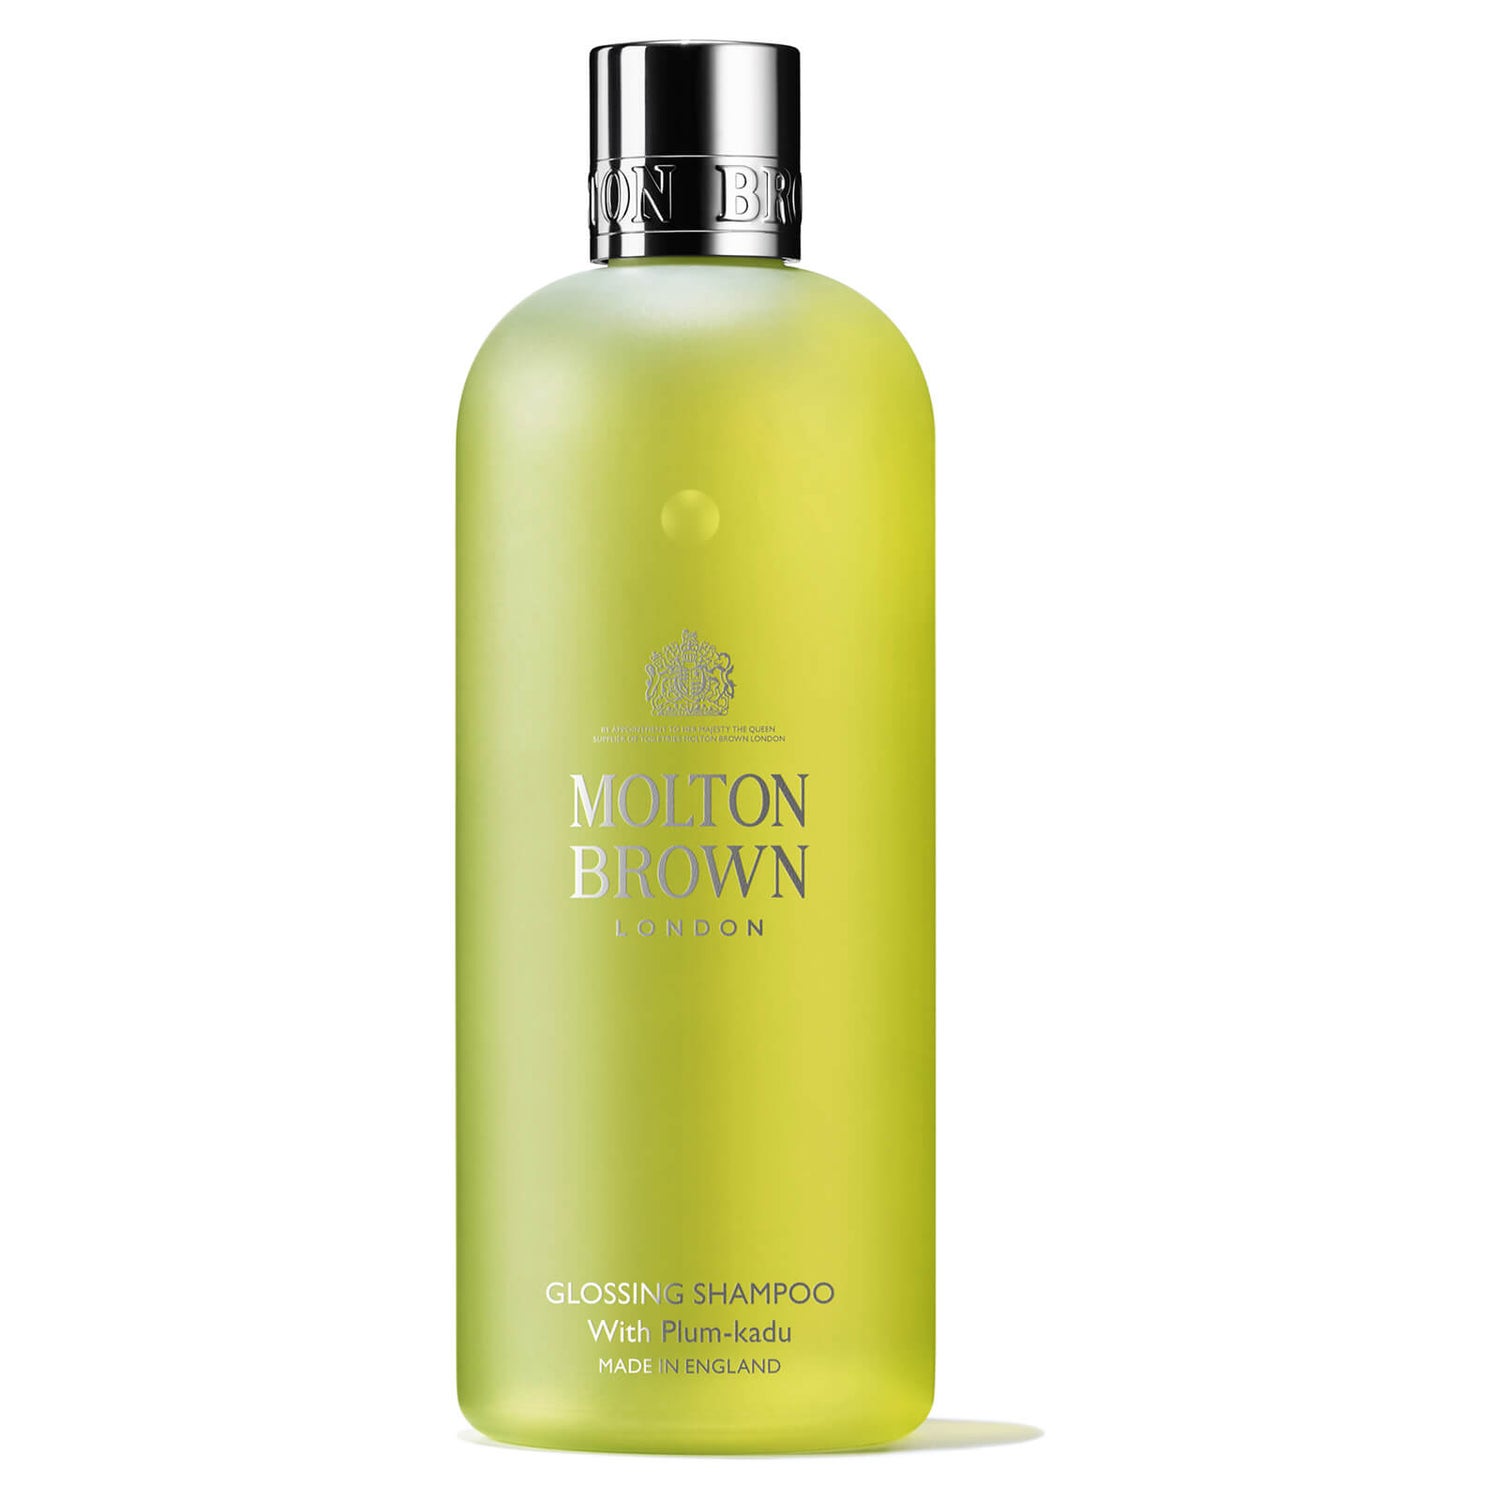 Molton Brown Plum-kadu Glossing Shampoo 300ml